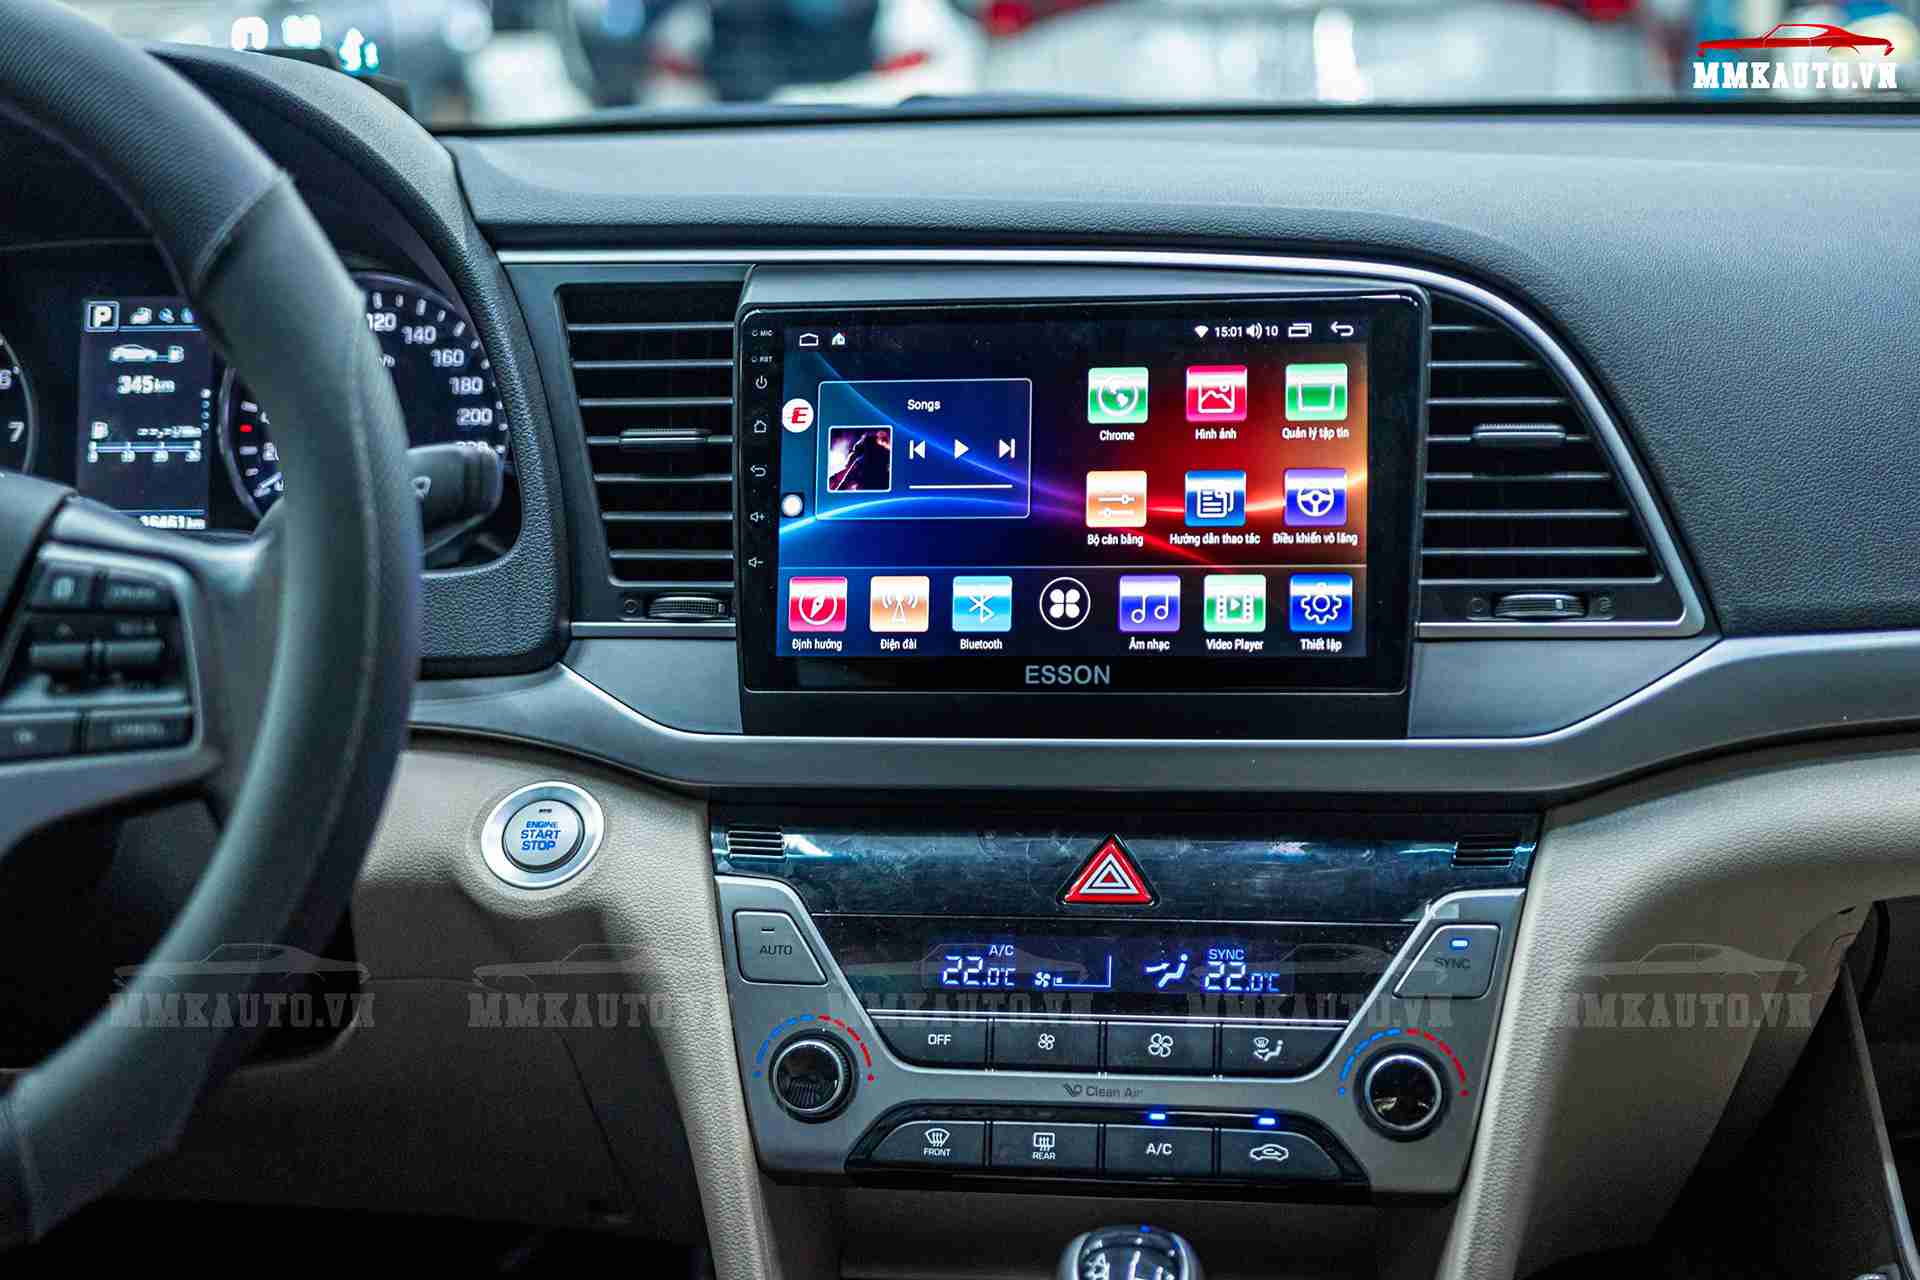 Thay thế màn hình Hyundai Elantra nguyên bản thành màn hình DVD Android 4G xịn xò